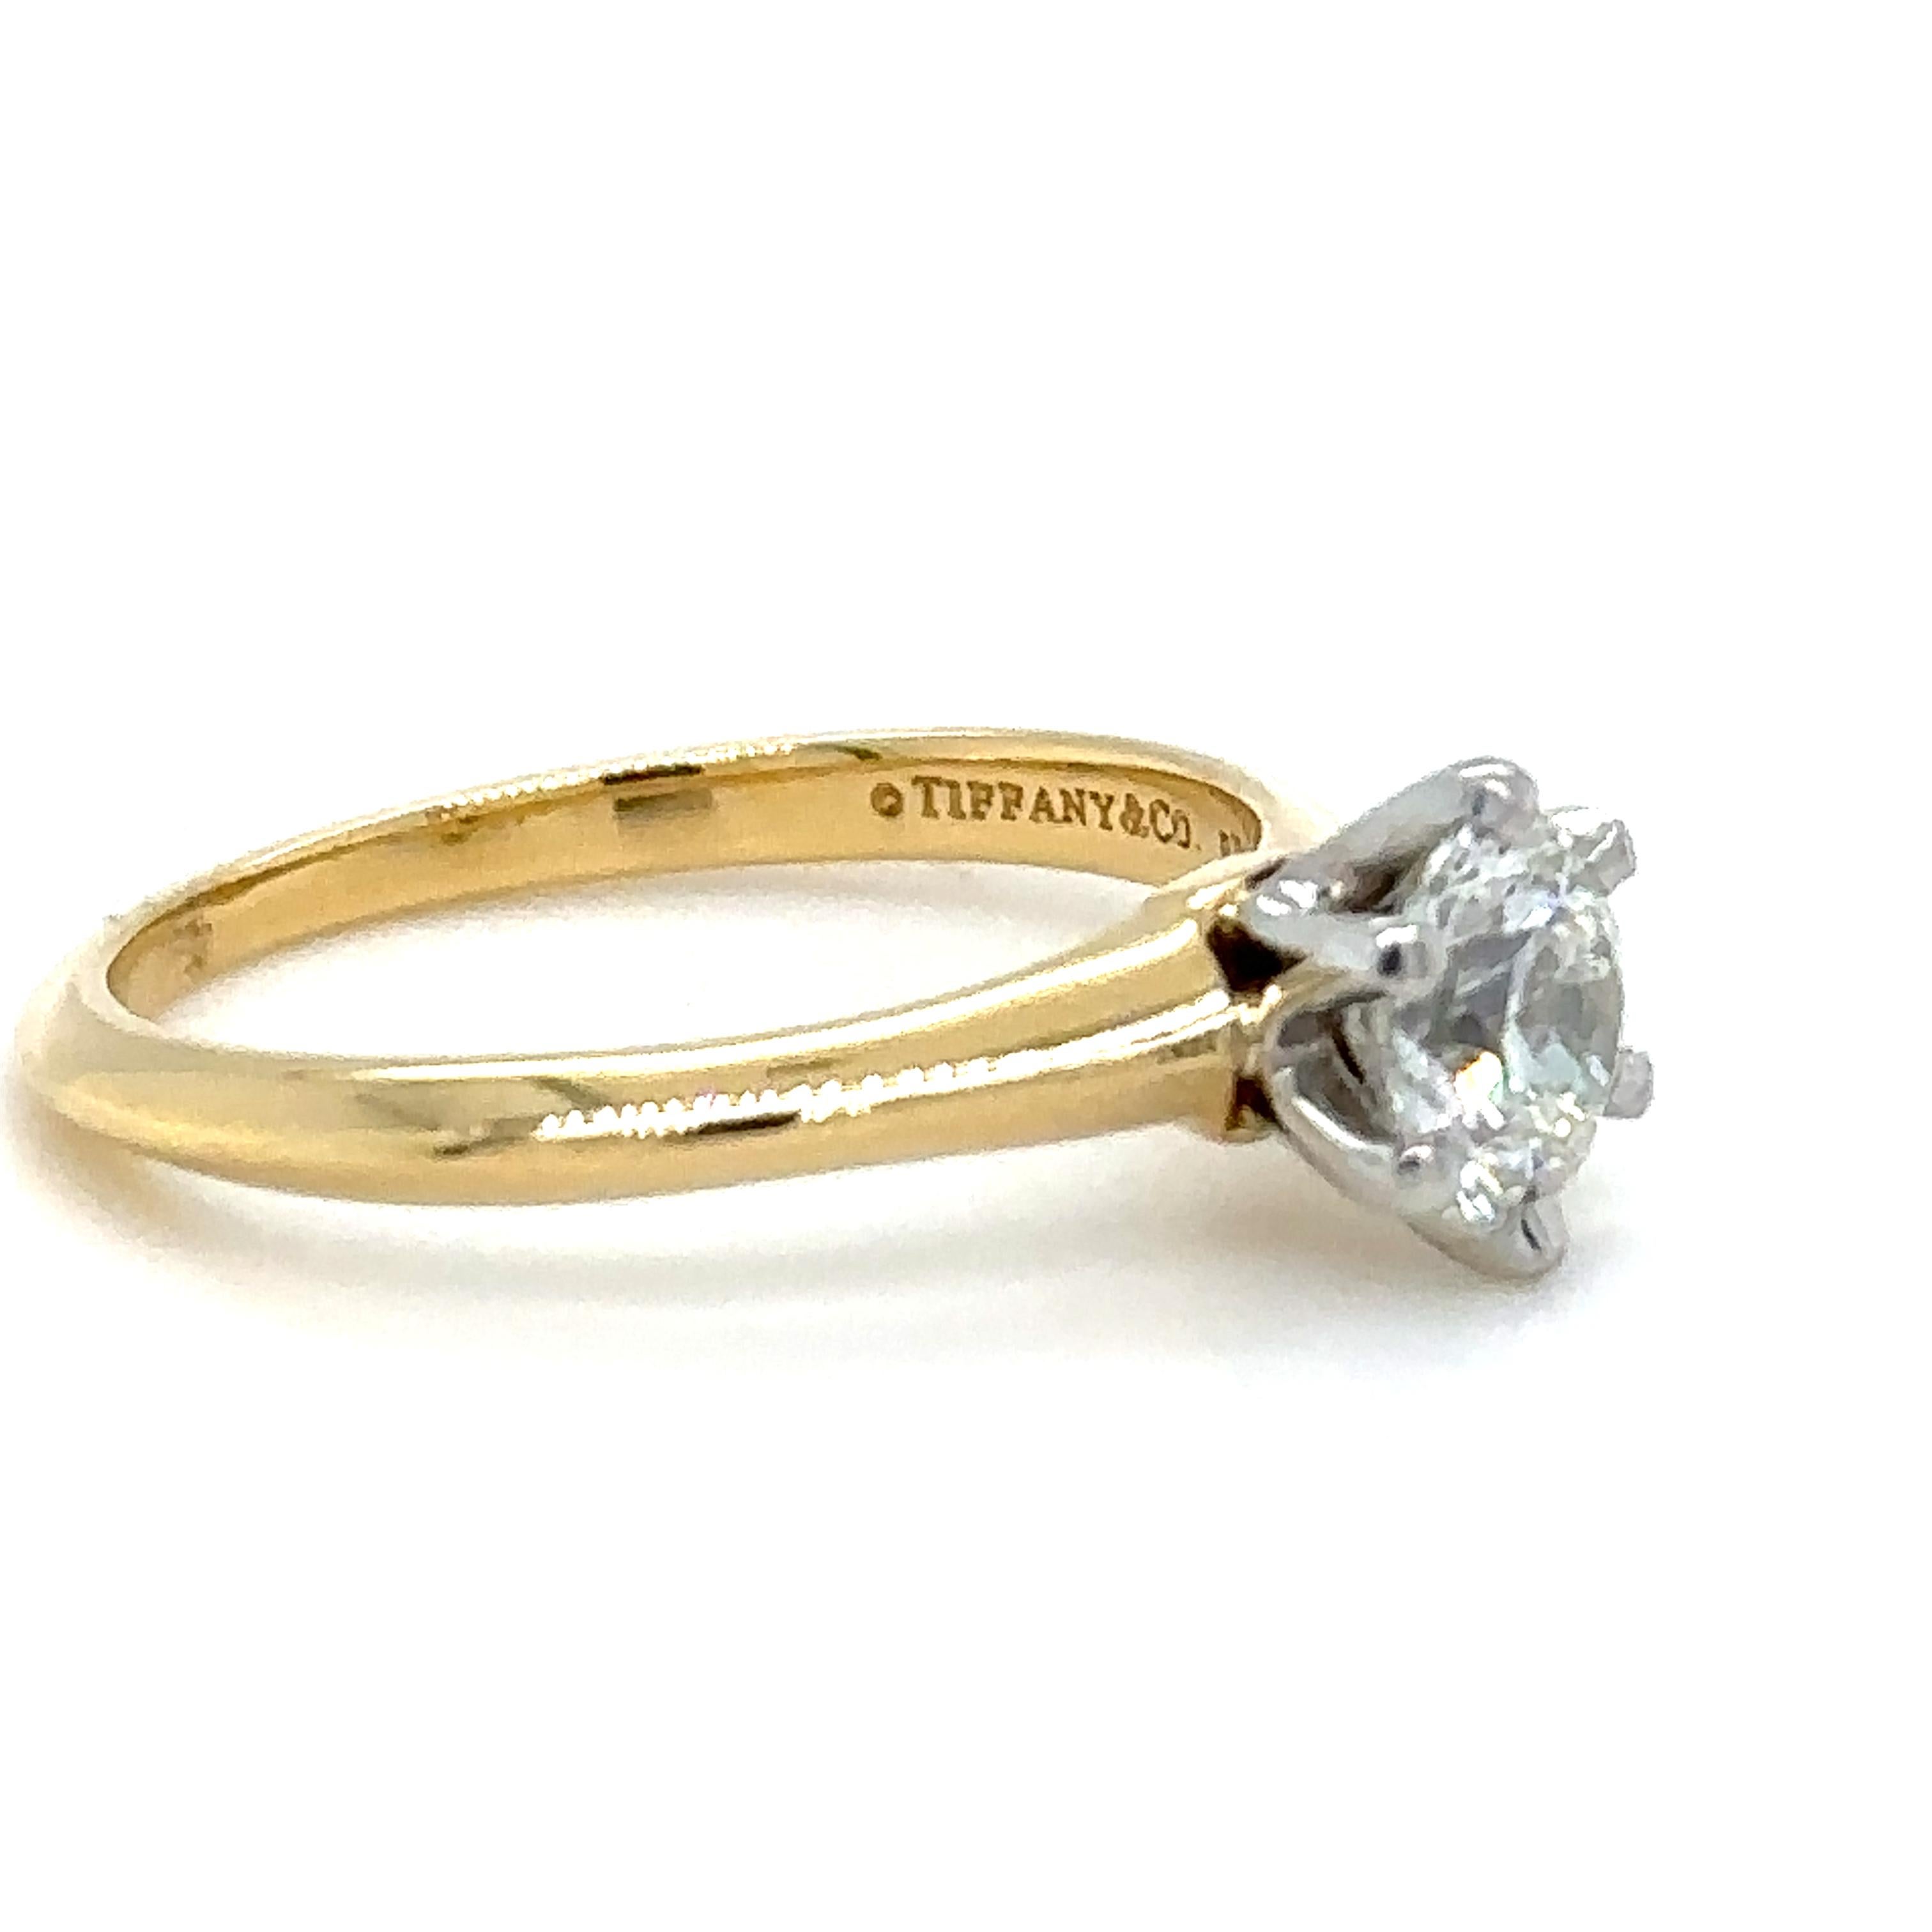 Bague Tiffany And Co Solitaire Round Brilliant Cut Diamond, six griffes en platine sur un anneau de 1,6 mm en or jaune 18ct.

Diamant 0.82ct, Numéro gravé au laser sur la facette étoile : F02120284, Numéro de série sur la bande 18695359.

Aucun